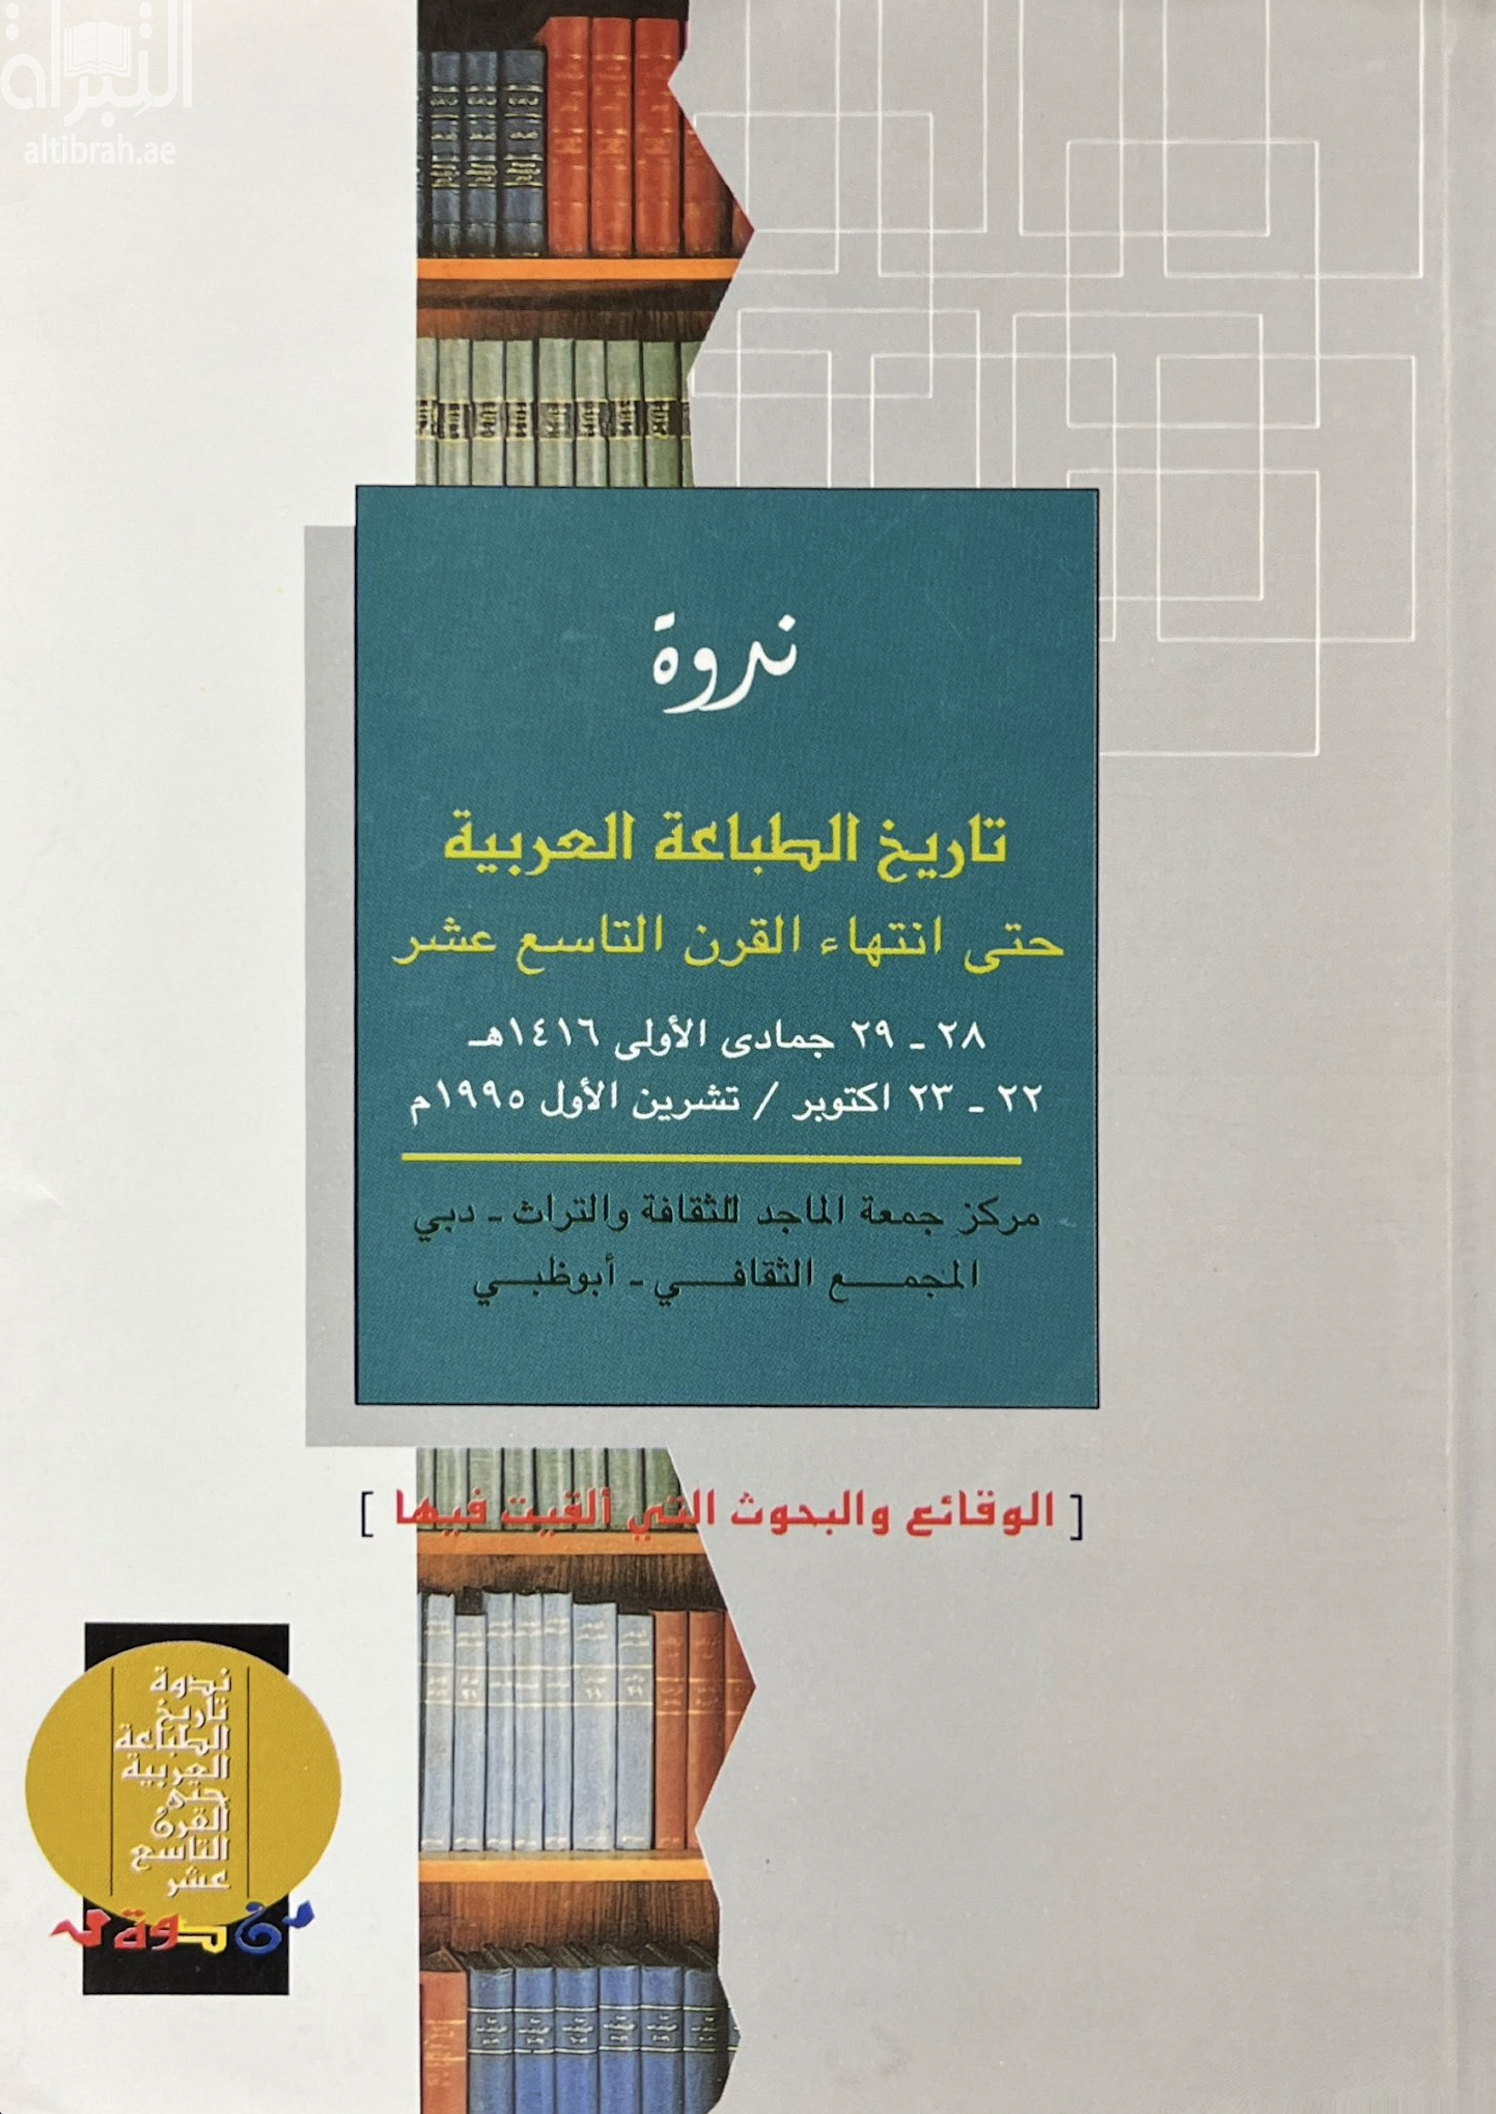 ندوة تاريخ الطباعة العربية حتى انتهاء القرن التاسع عشر